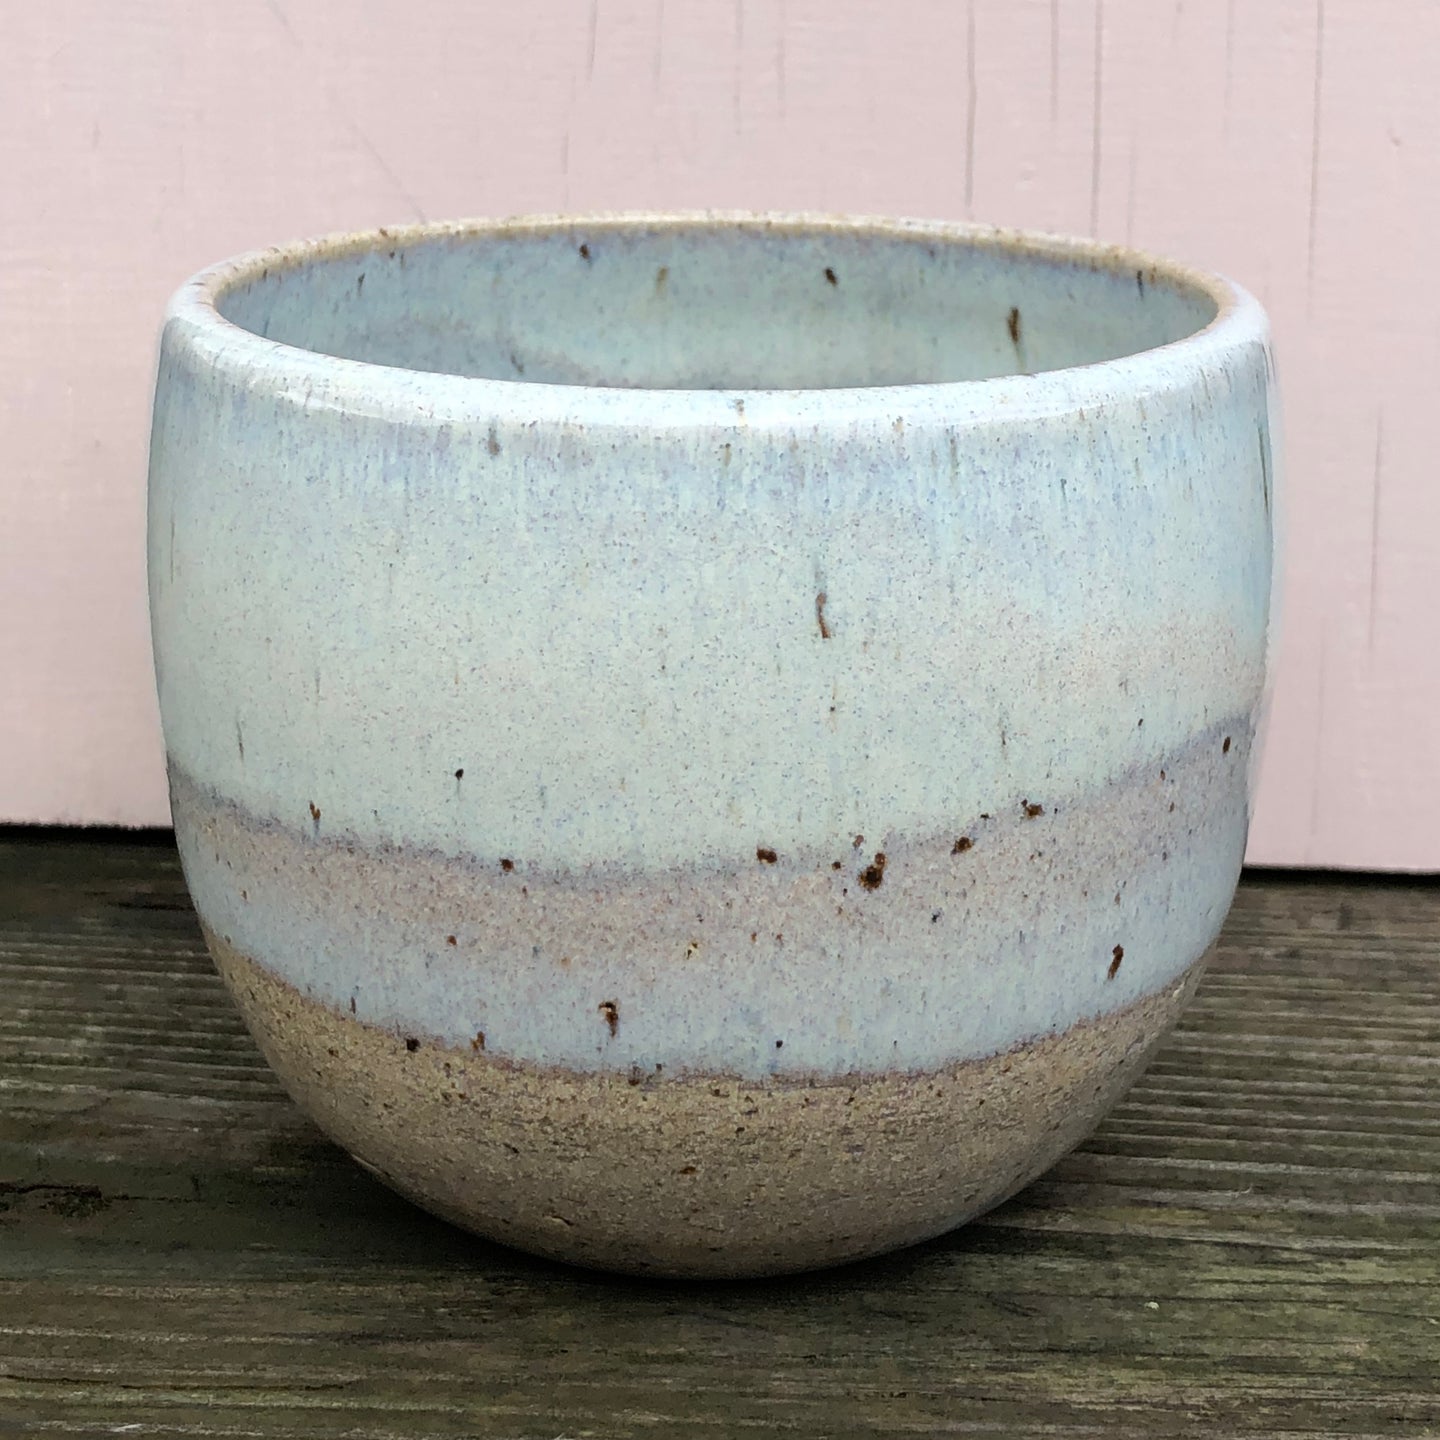 Stoneware teabowl with opal glaze